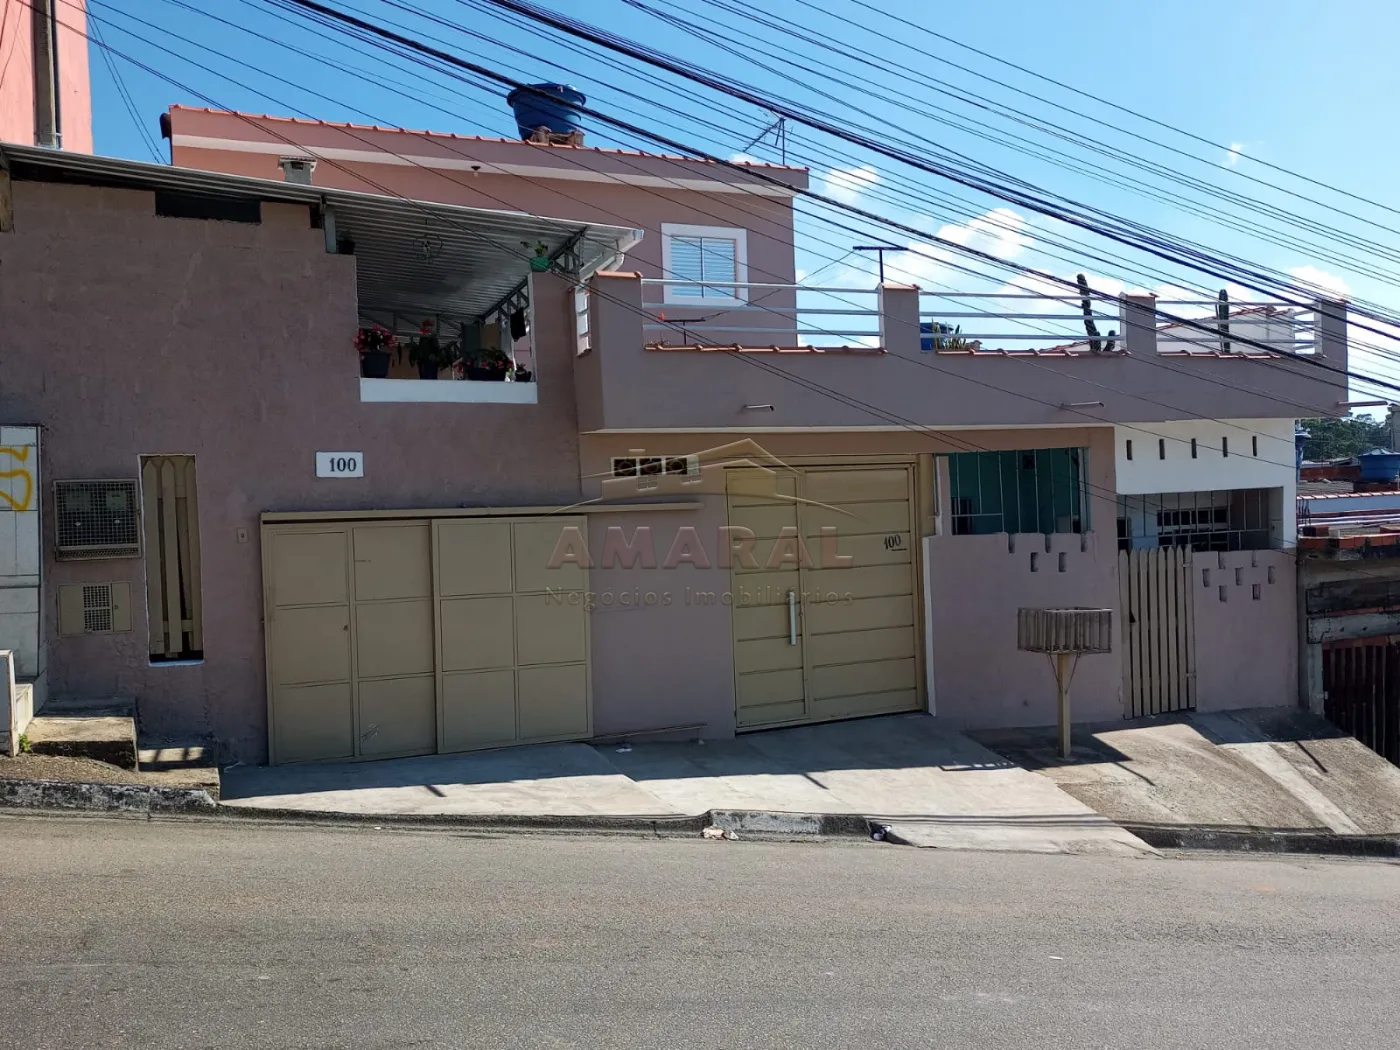 Comprar Casas / Sobrado em Suzano R$ 450.000,00 - Foto 1